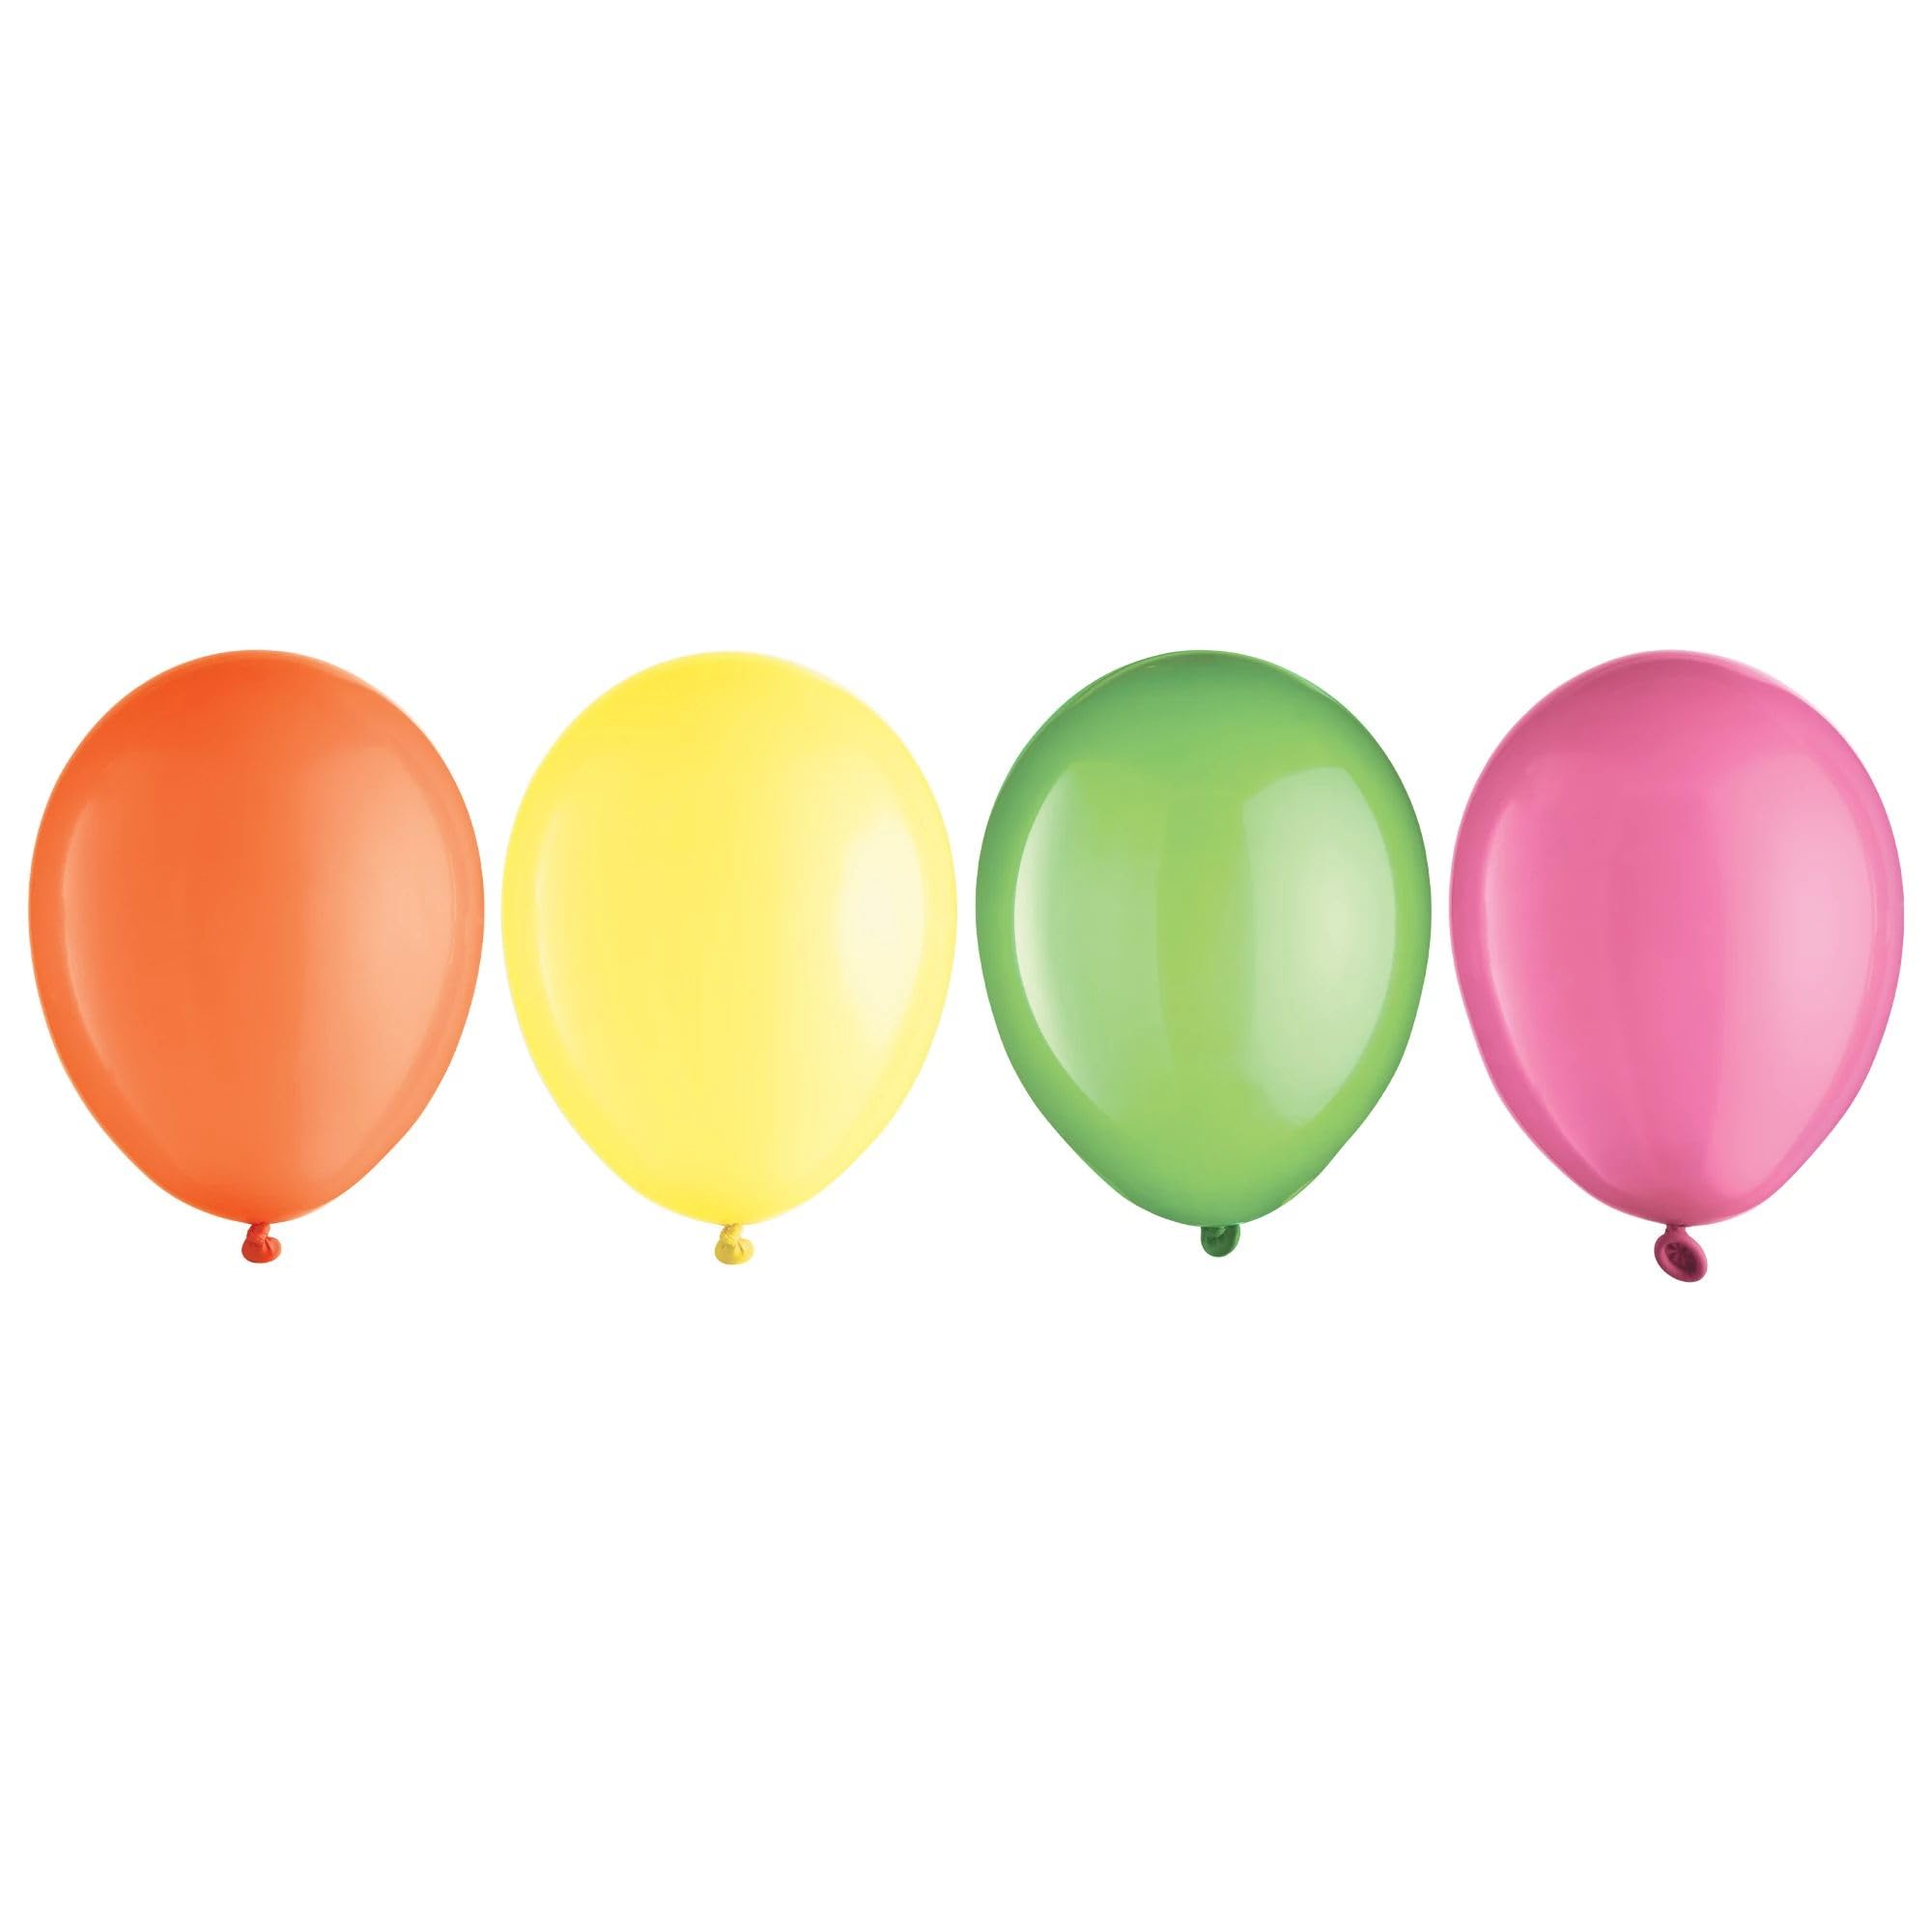 Neon Assortment Balloon - 5